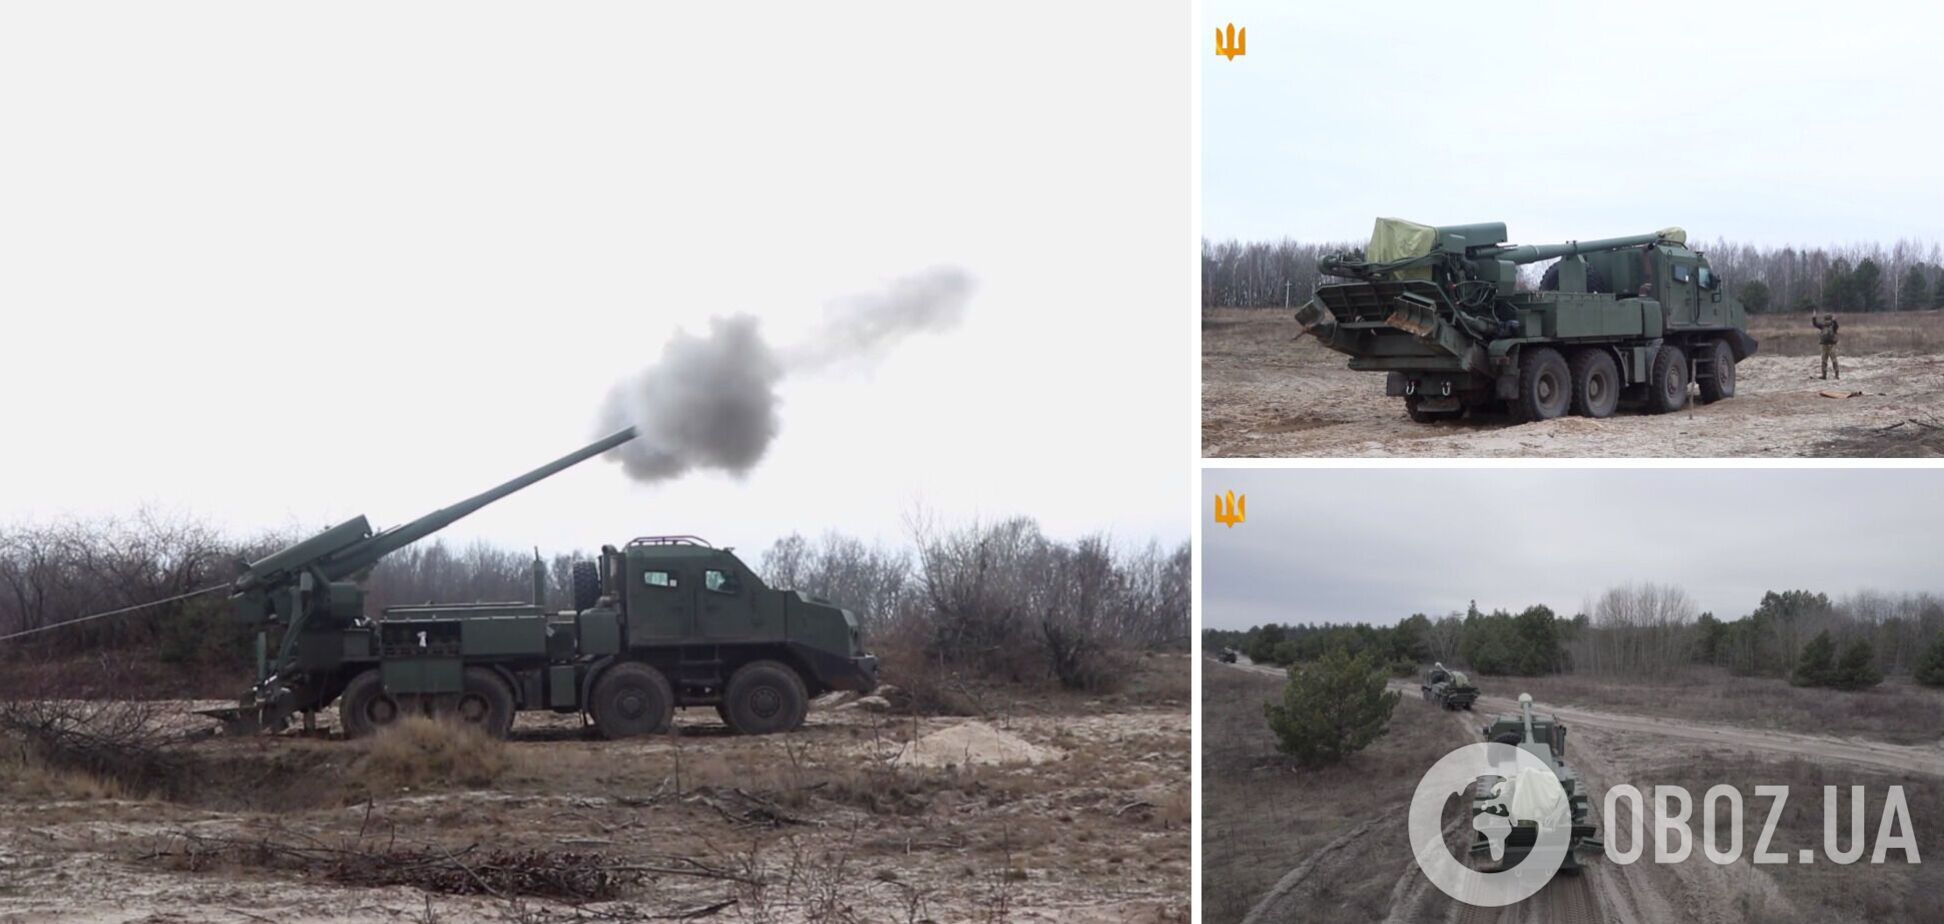 Украинская САУ 'Богдана' демонстрирует высокую боевую эффективность на фронте: Генштаб показал кадры работы